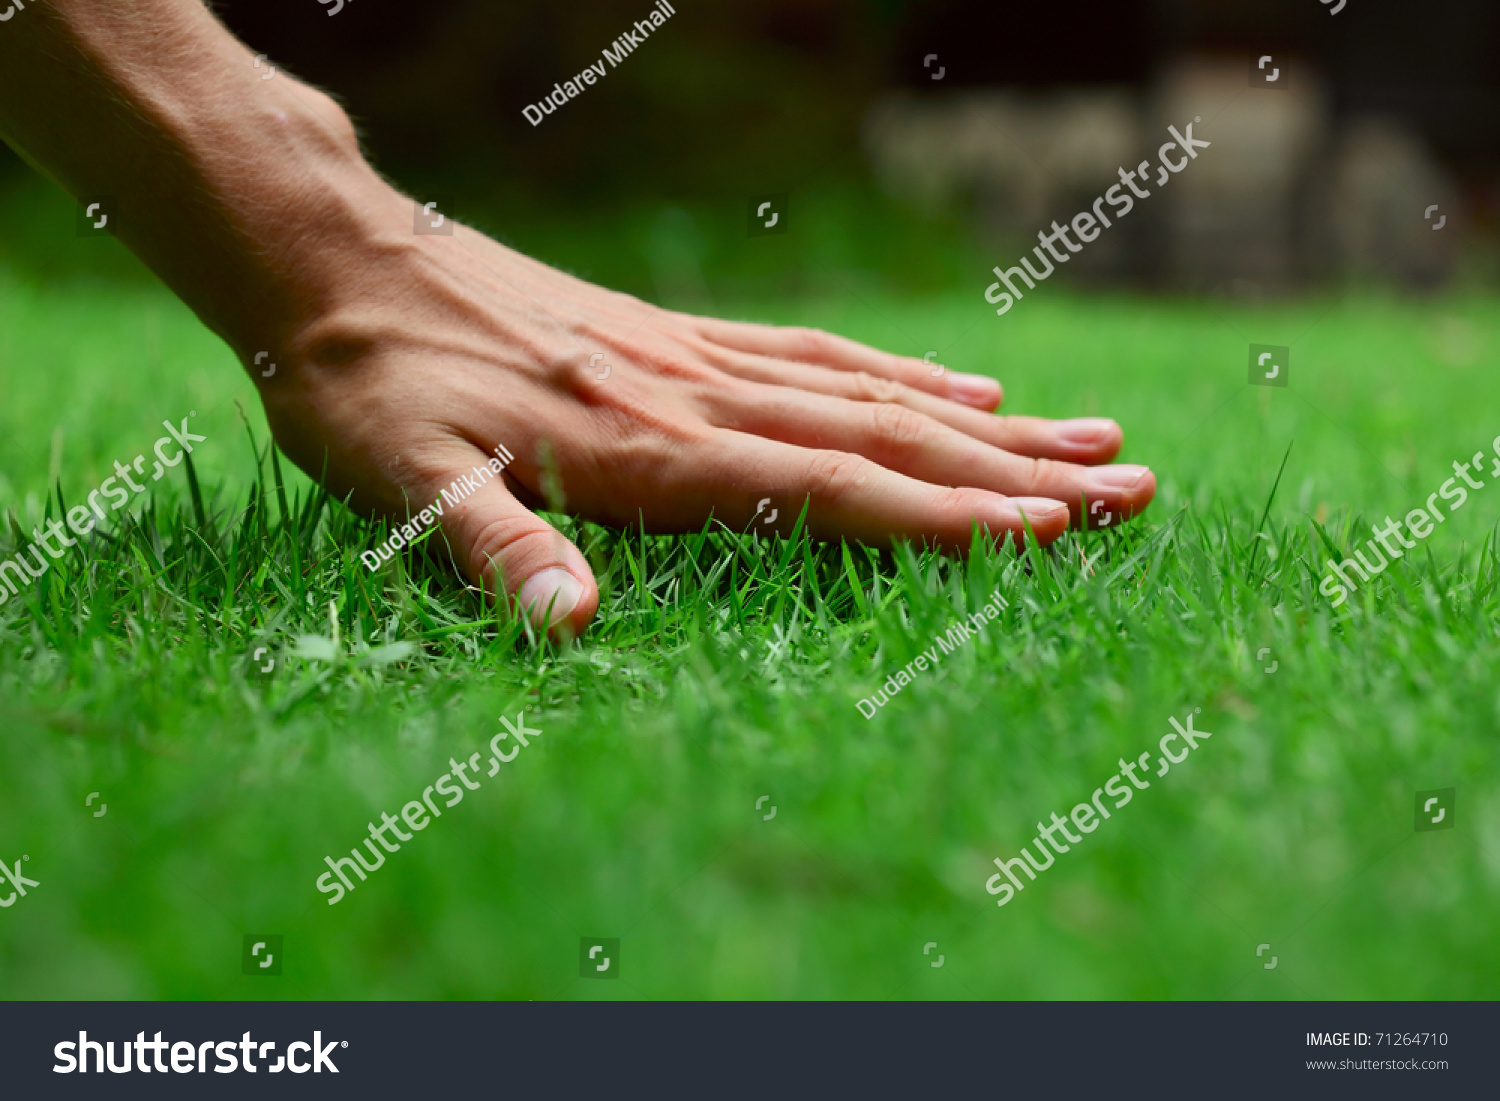 Hand on green lush grass #71264710